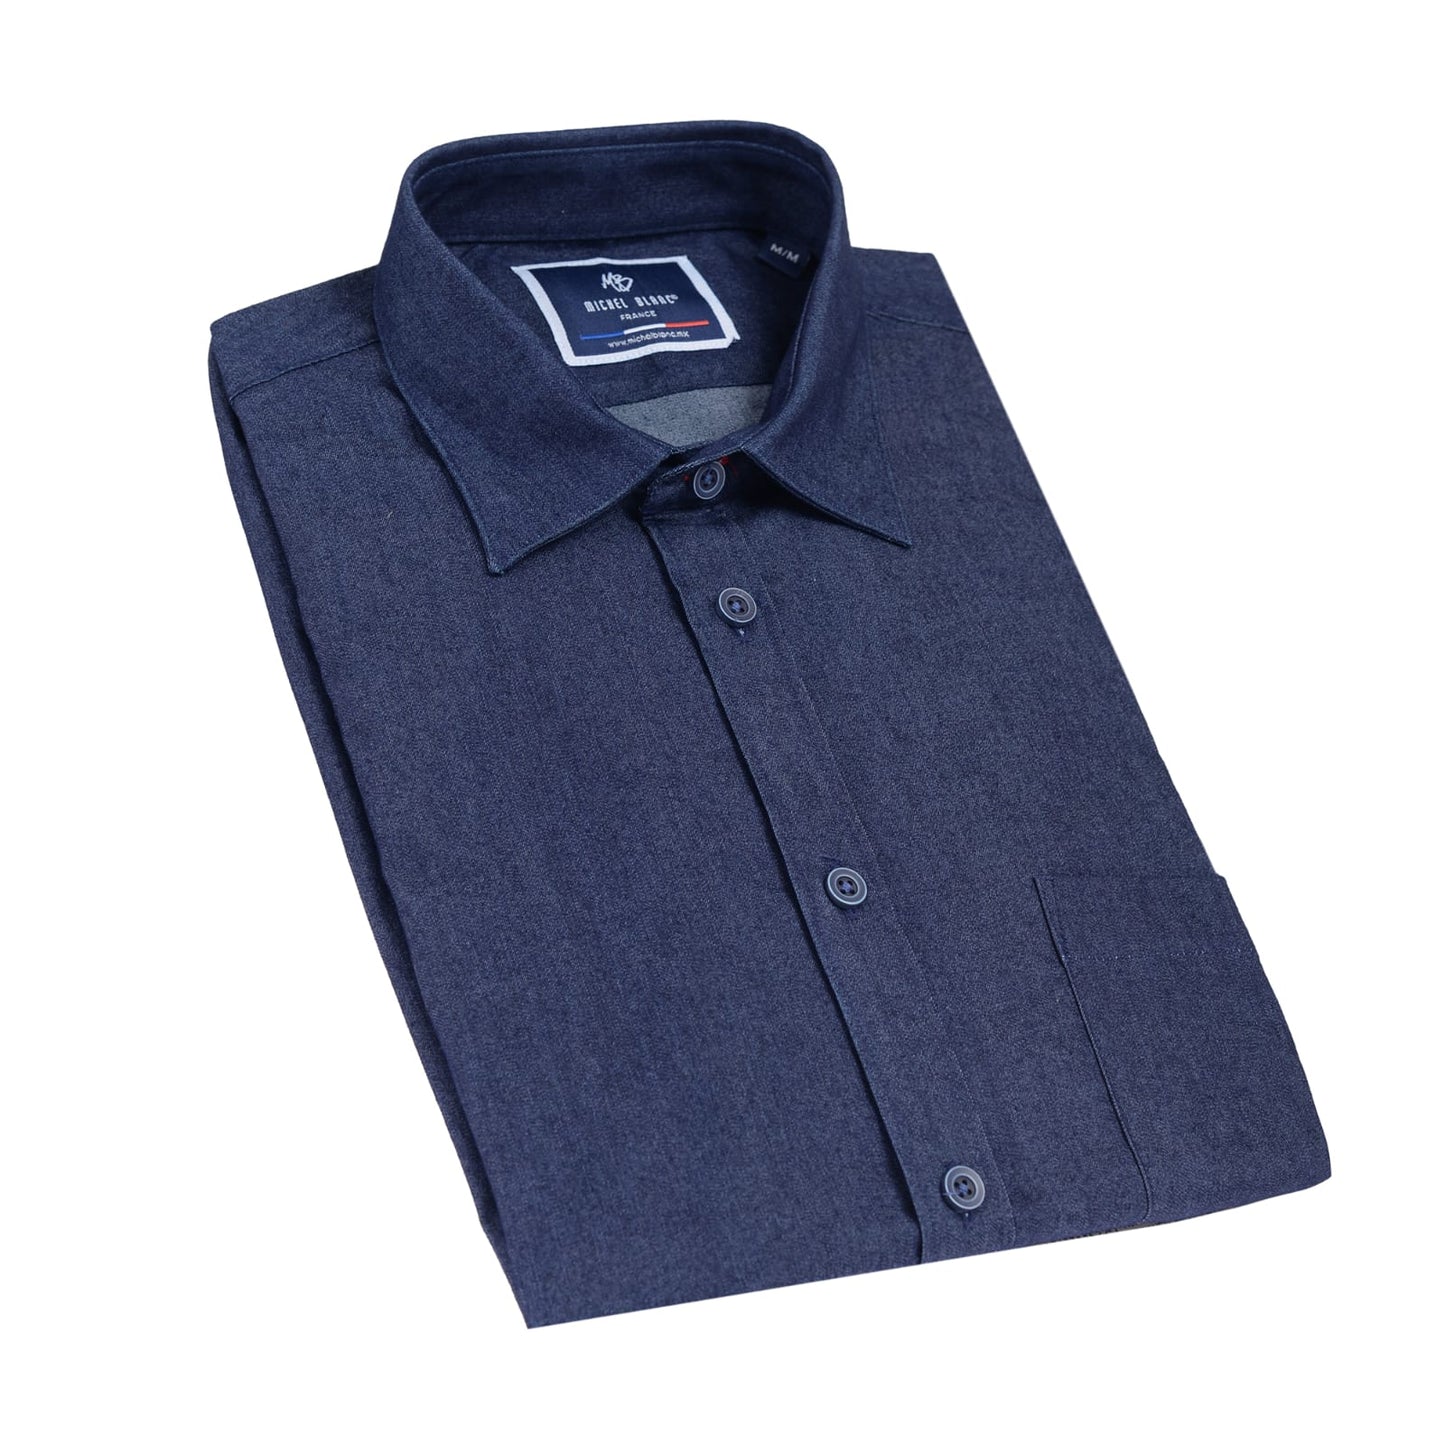 Camisa manga larga tipo denim azul marino